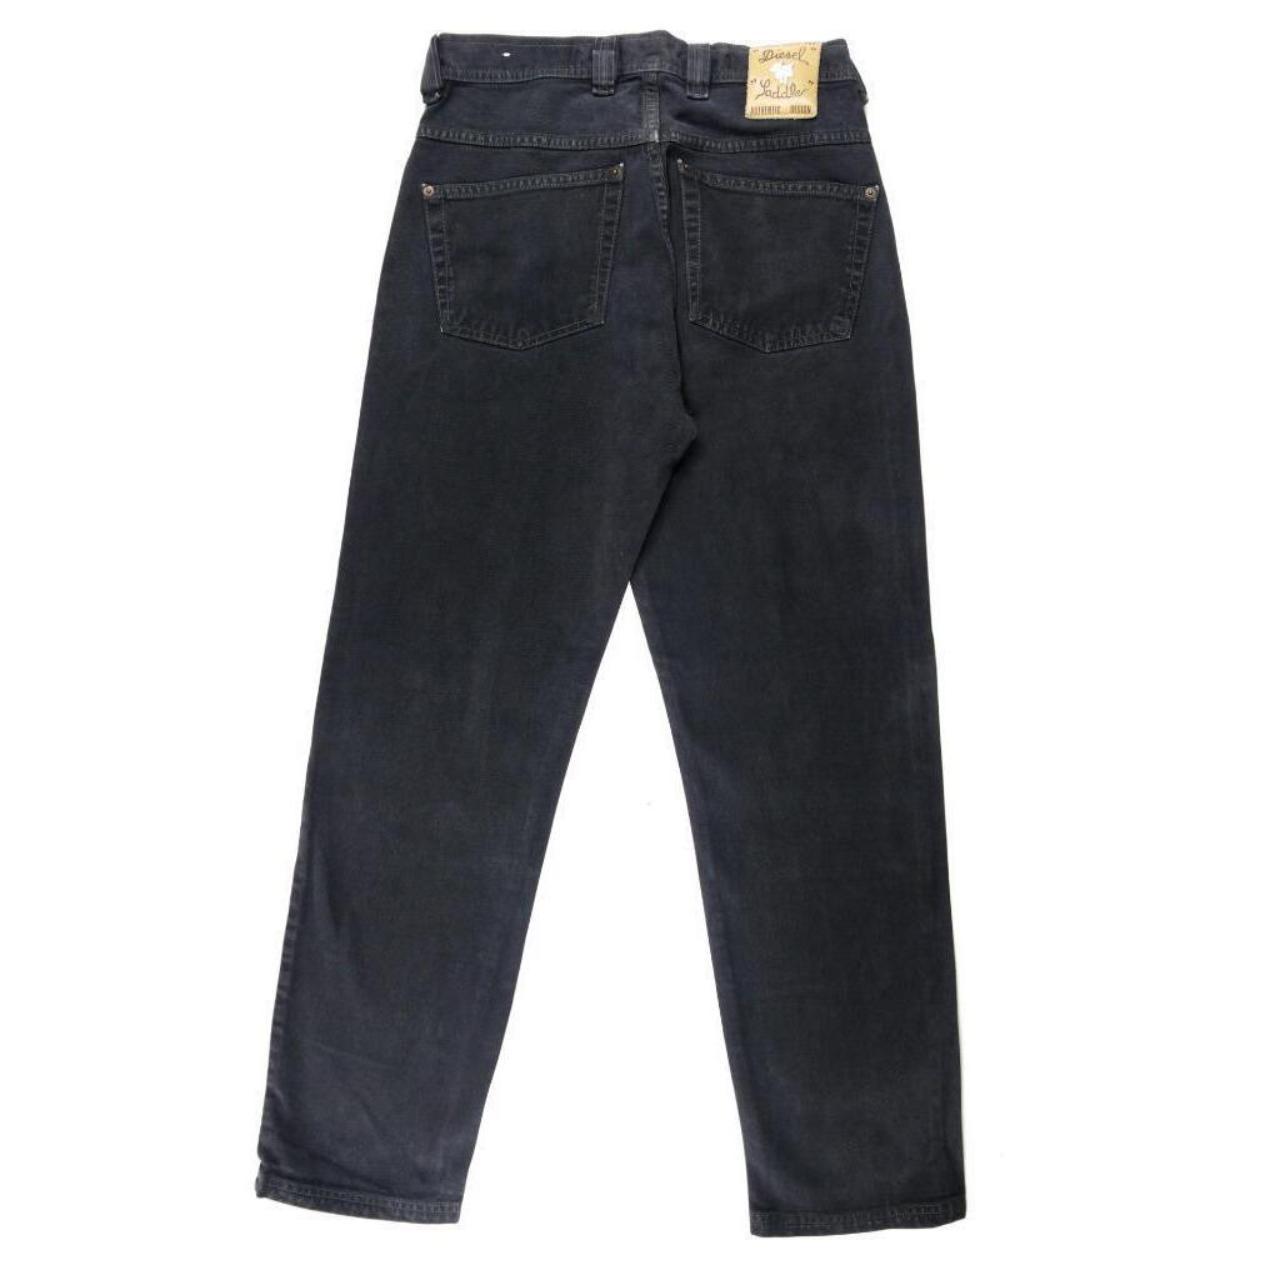 Men's vintage 90s DIESEL black straight leg jeans.... - Depop